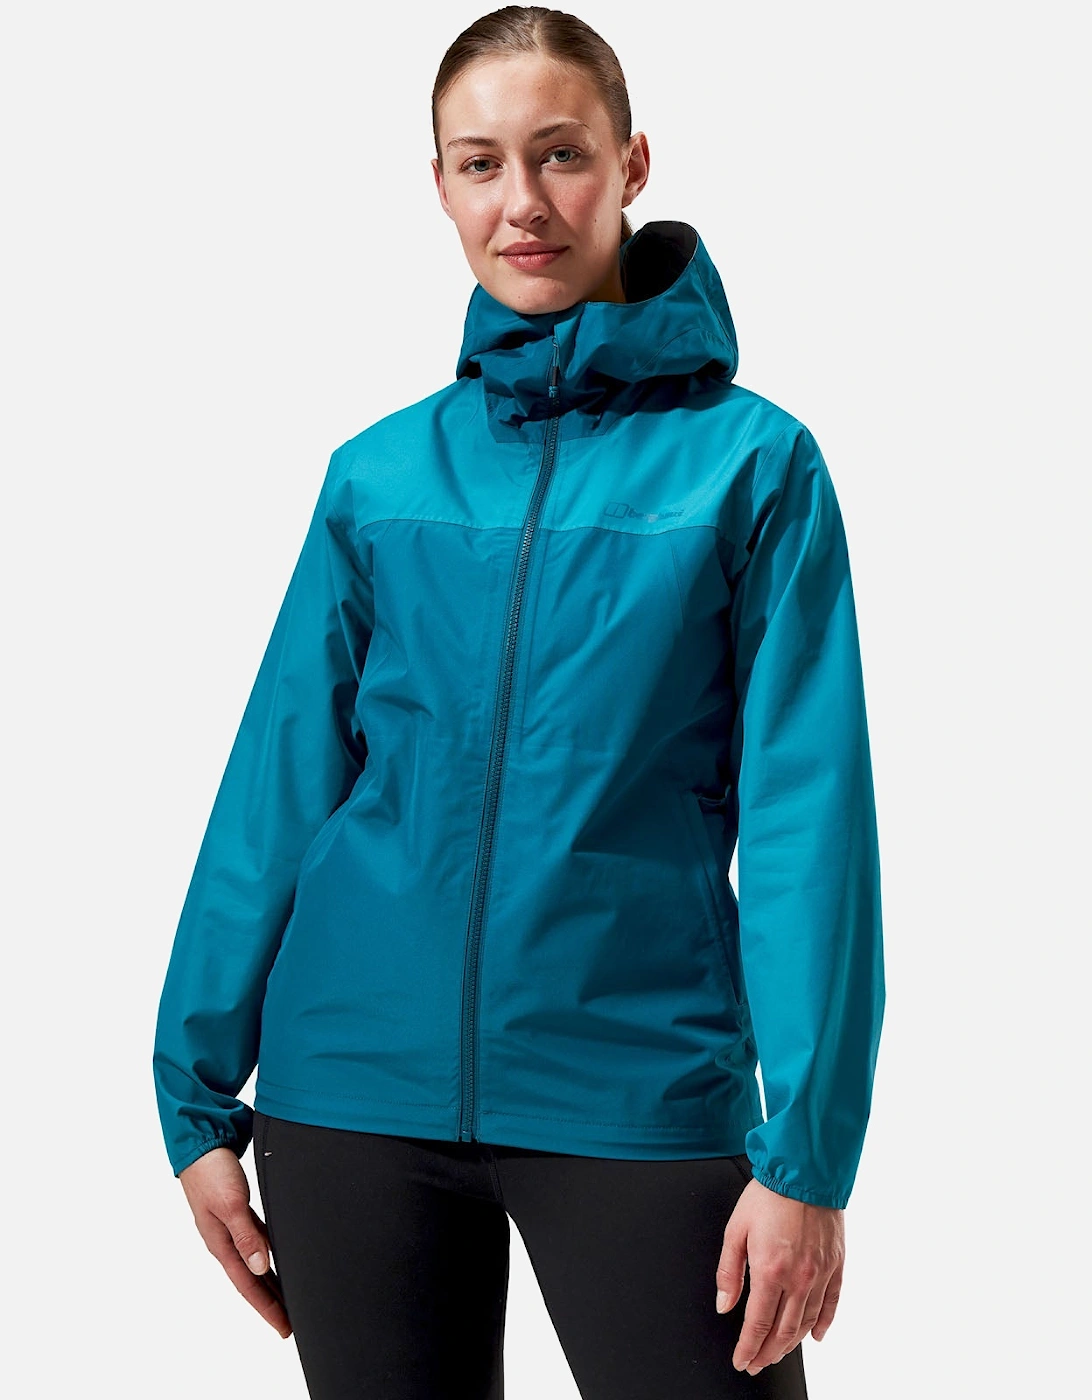 Womens Deluge Pro 3.0 Waterproof Walking Jacket, 20 of 19